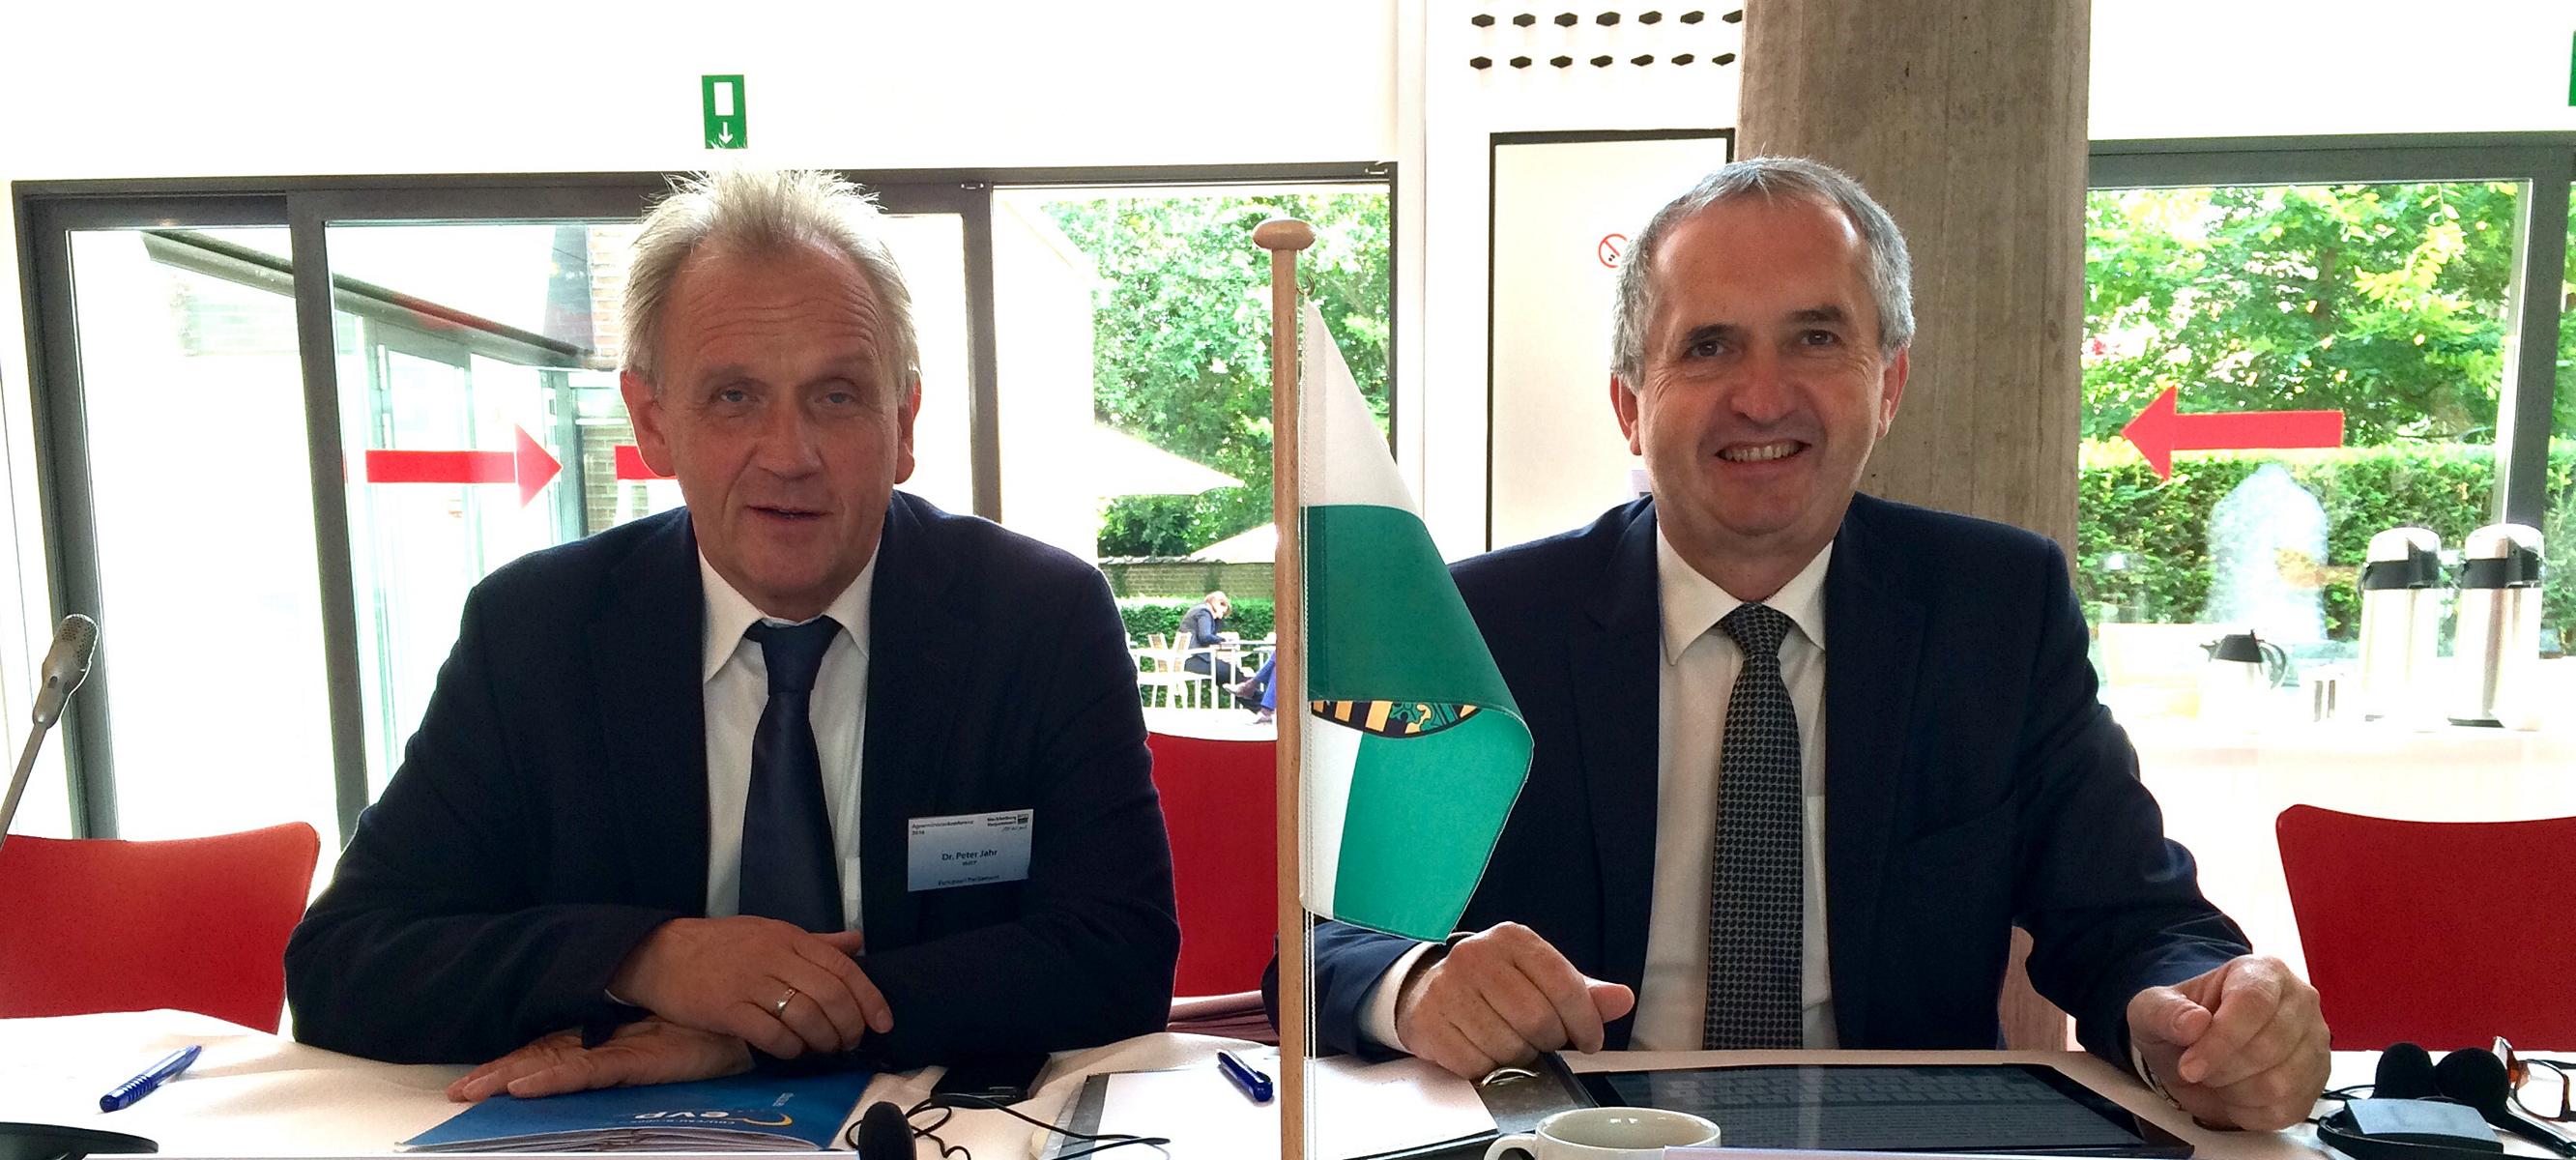 Seite an Seite setzen sich Dr. Peter Jahr MdEP und Staatsminister Thomas Schmidt MdL in Brüssel für eine Entschlackung des Regelungsdschungels eiin.